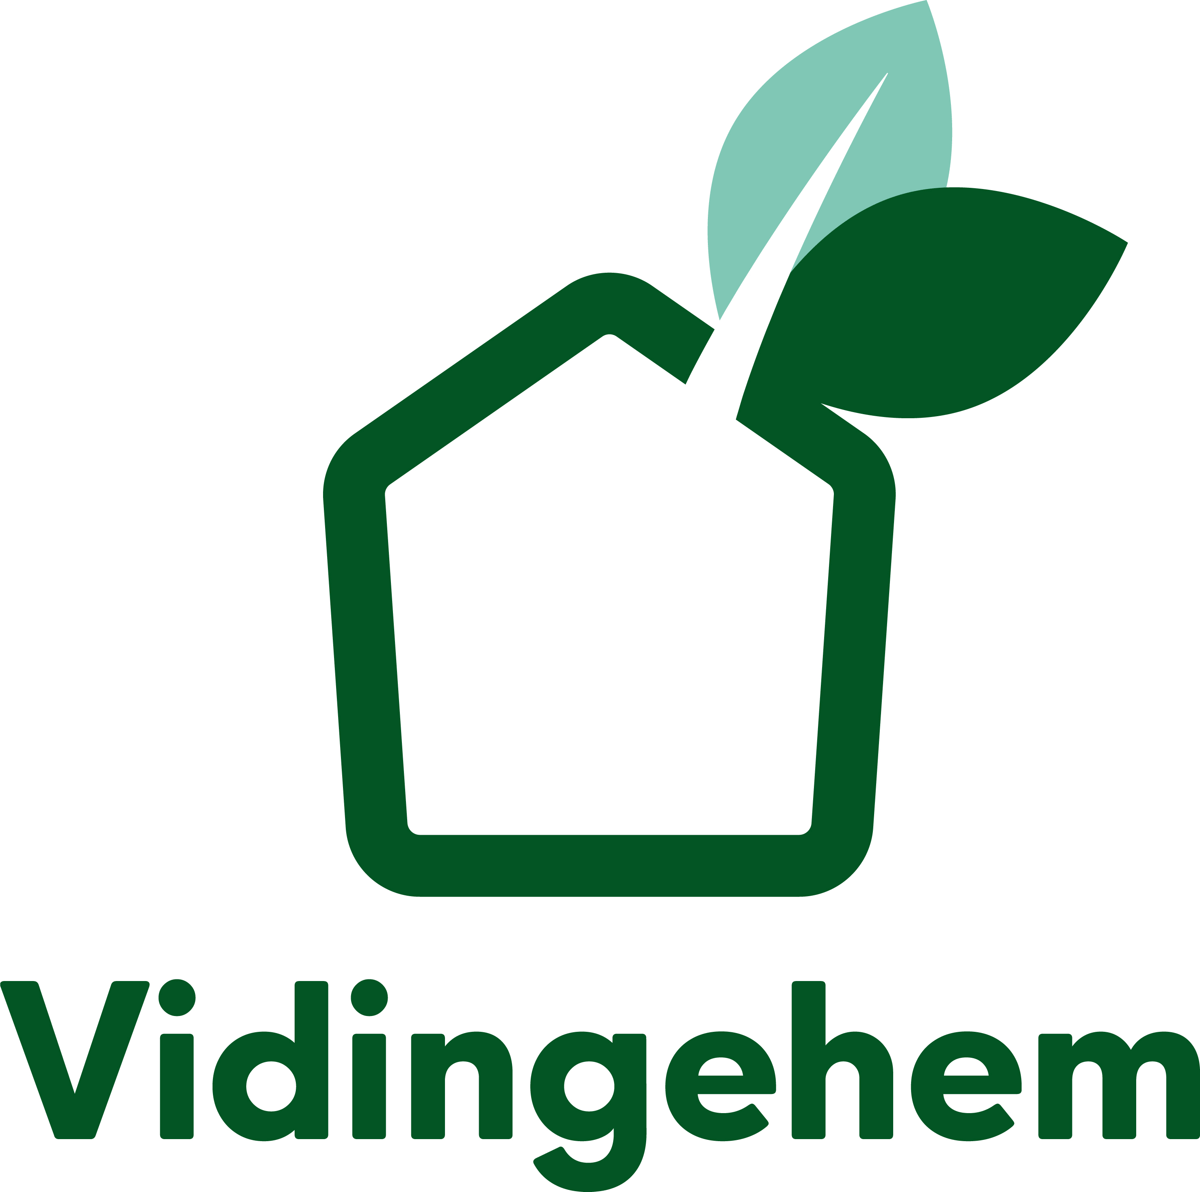 Vidingehem-logo-stående-färg.jpg